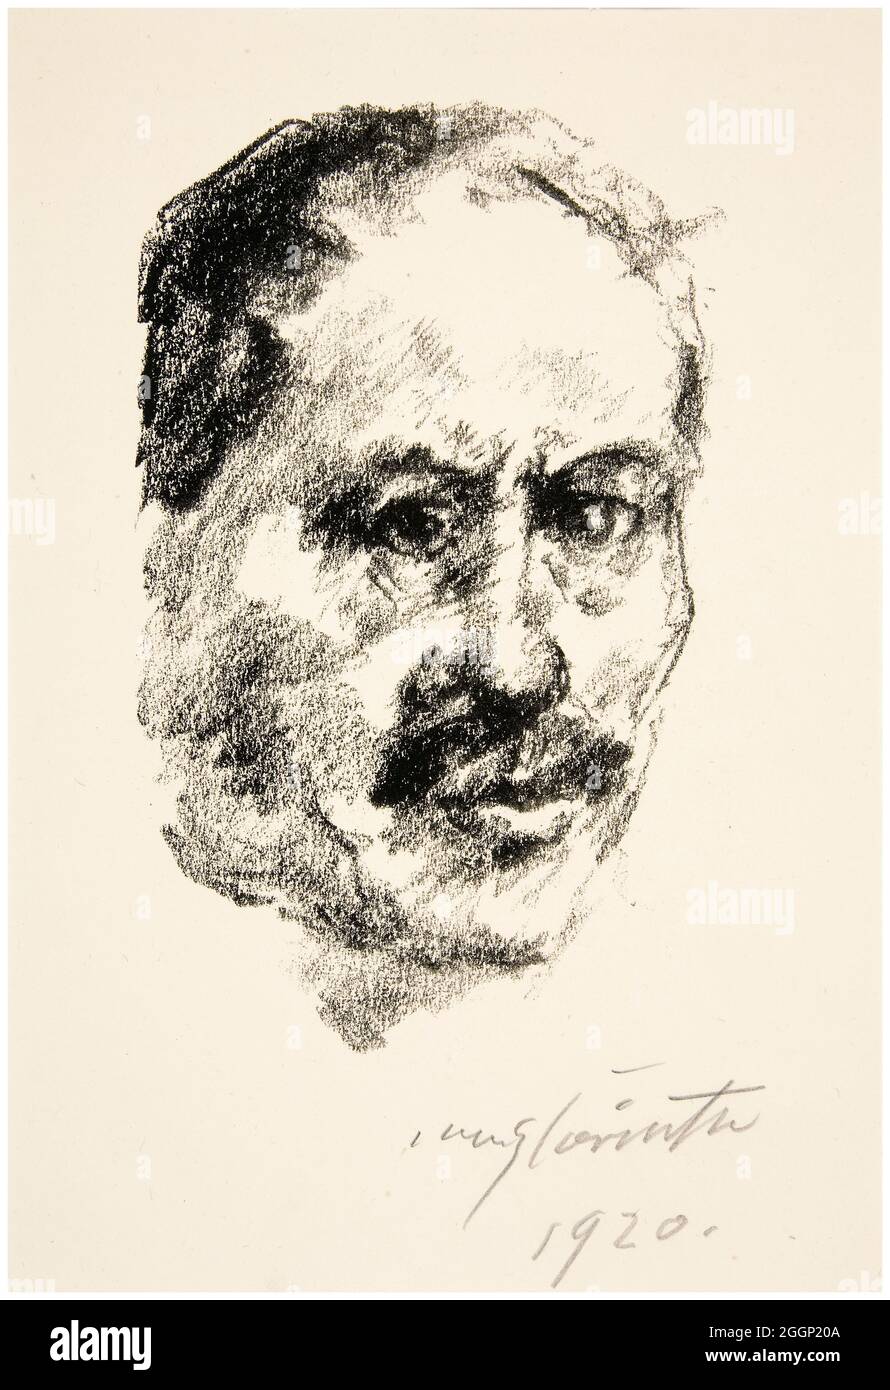 Lovis Corinto (1858-1925), autoritratto, stampa litografica, 1920 Foto Stock